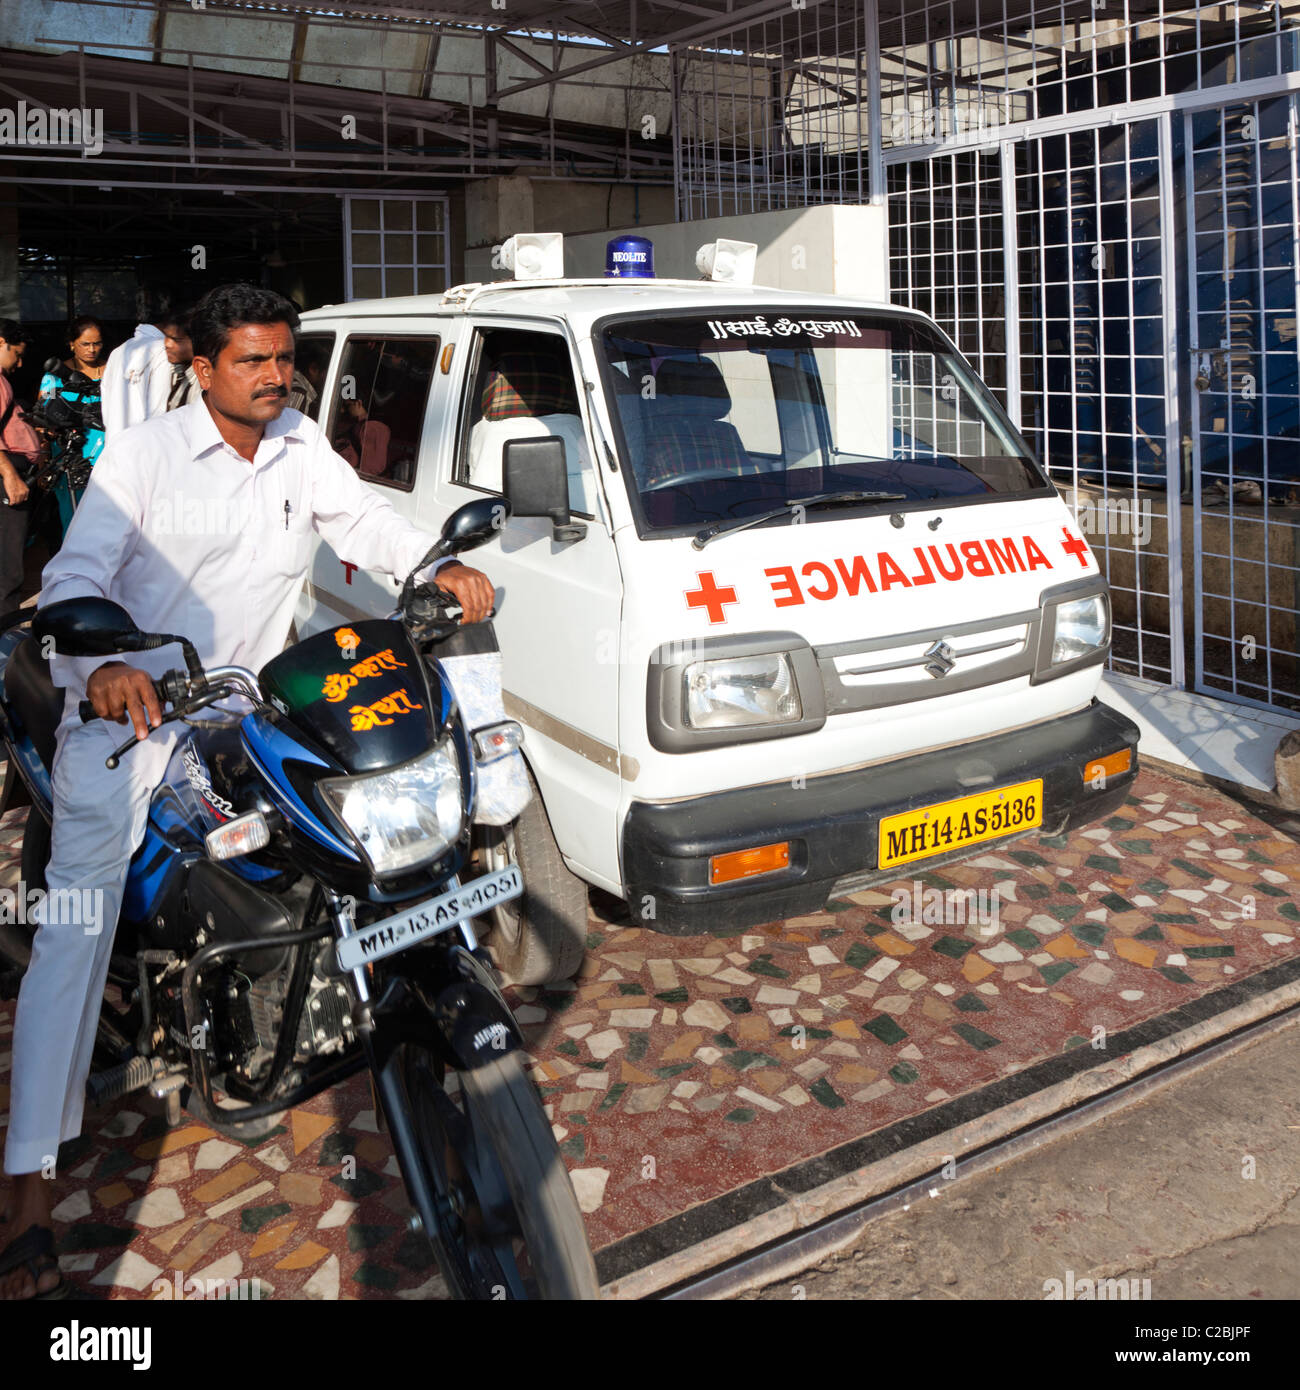 Un homme sur une moto à côté d'une ambulance à l'extérieur de l'hôpital Siddheshwar Sholapur Inde Banque D'Images